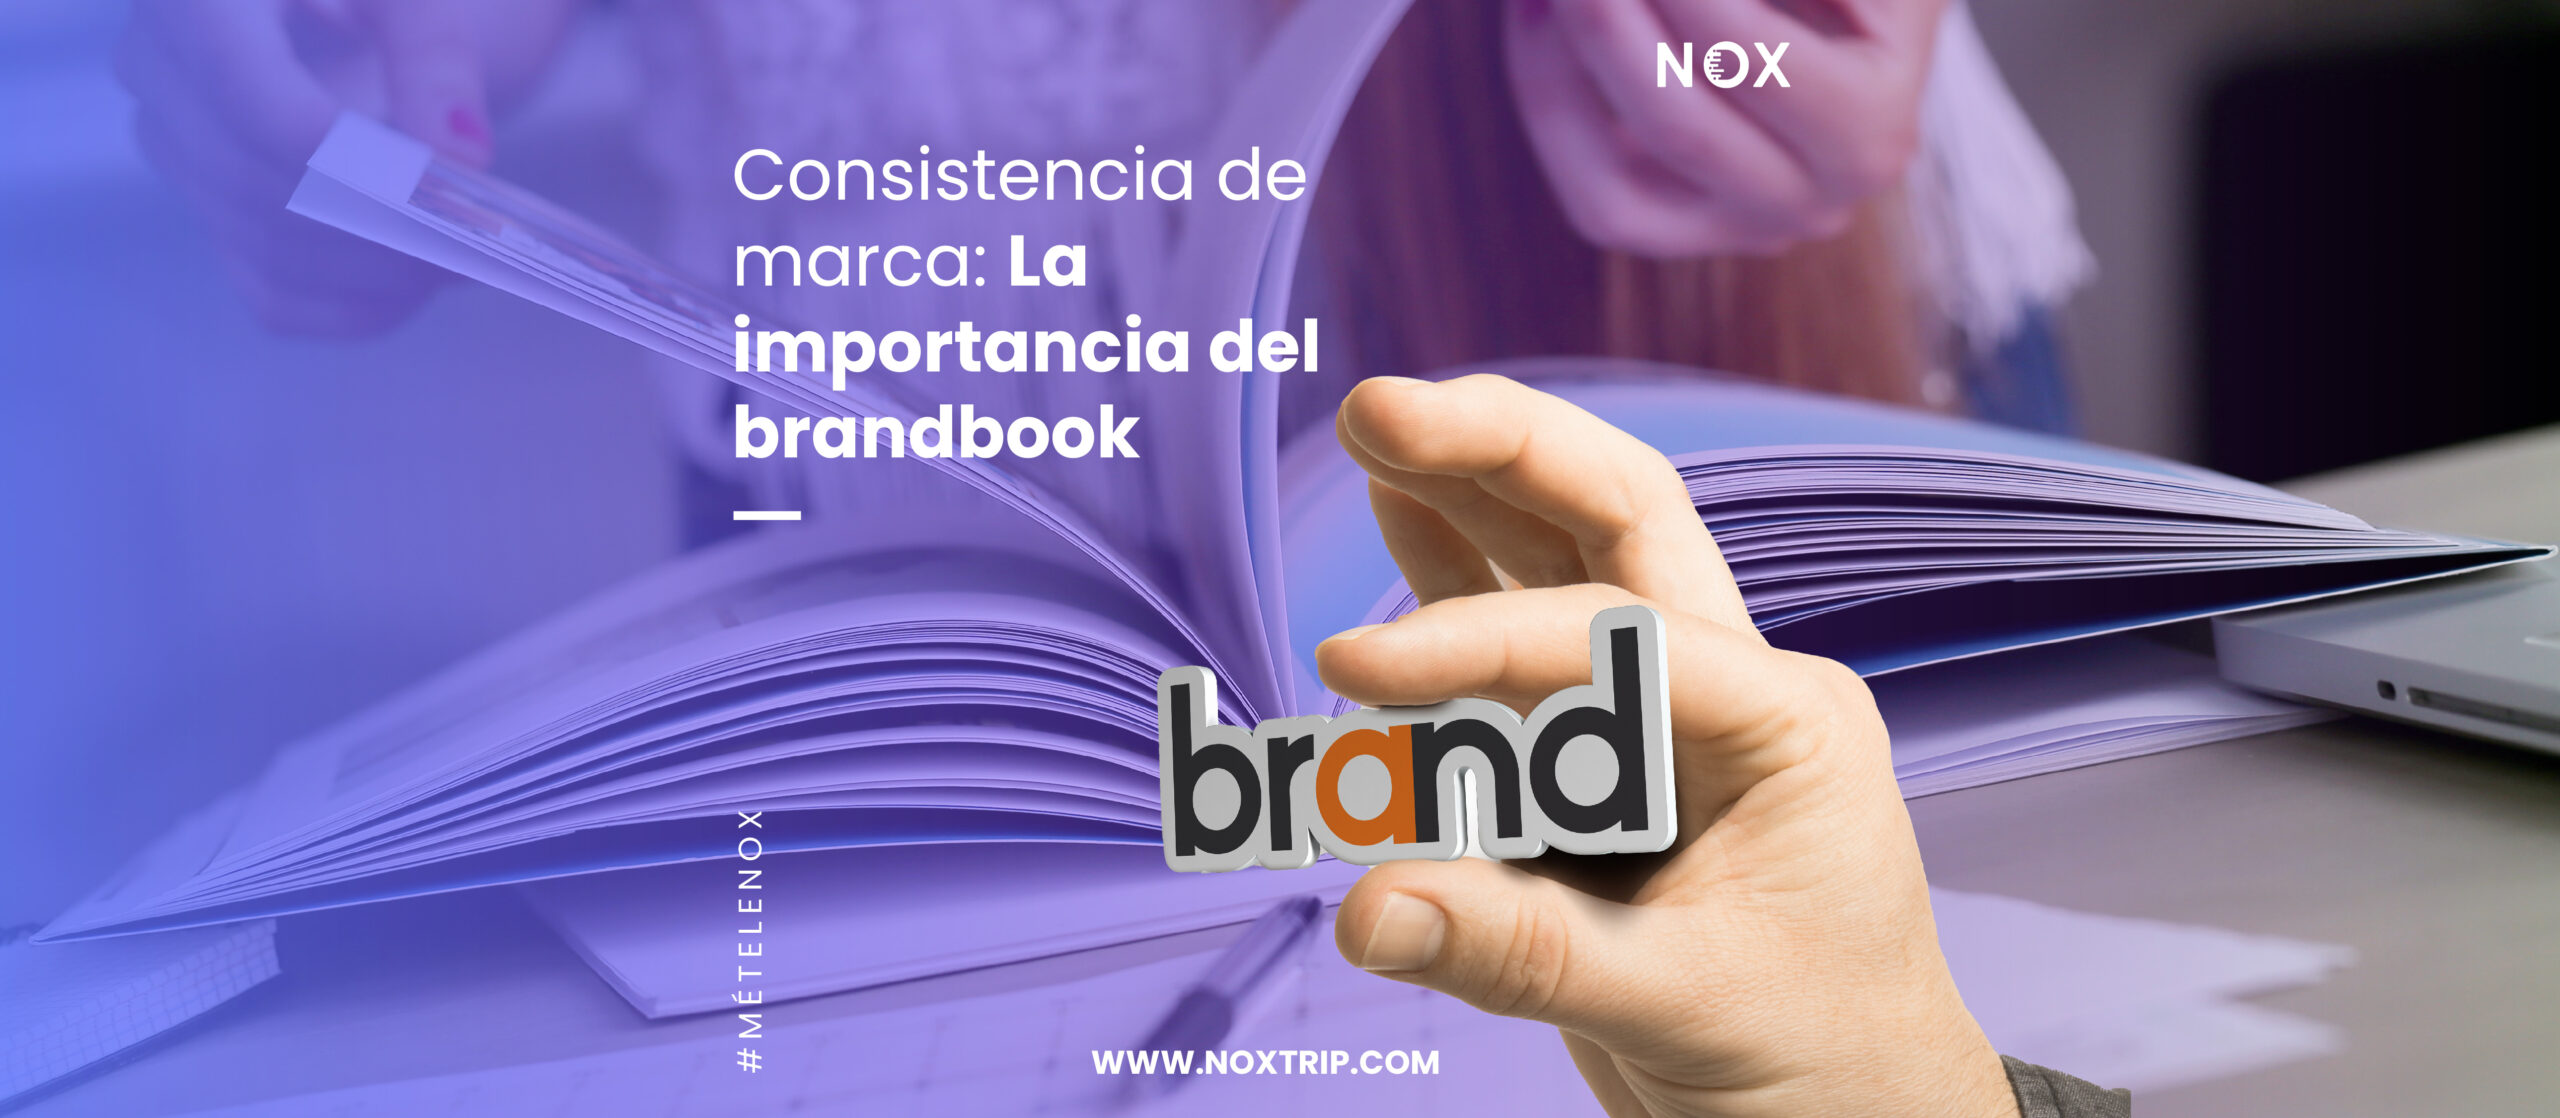 NOX Marketing Digital, Importancia del brandbook